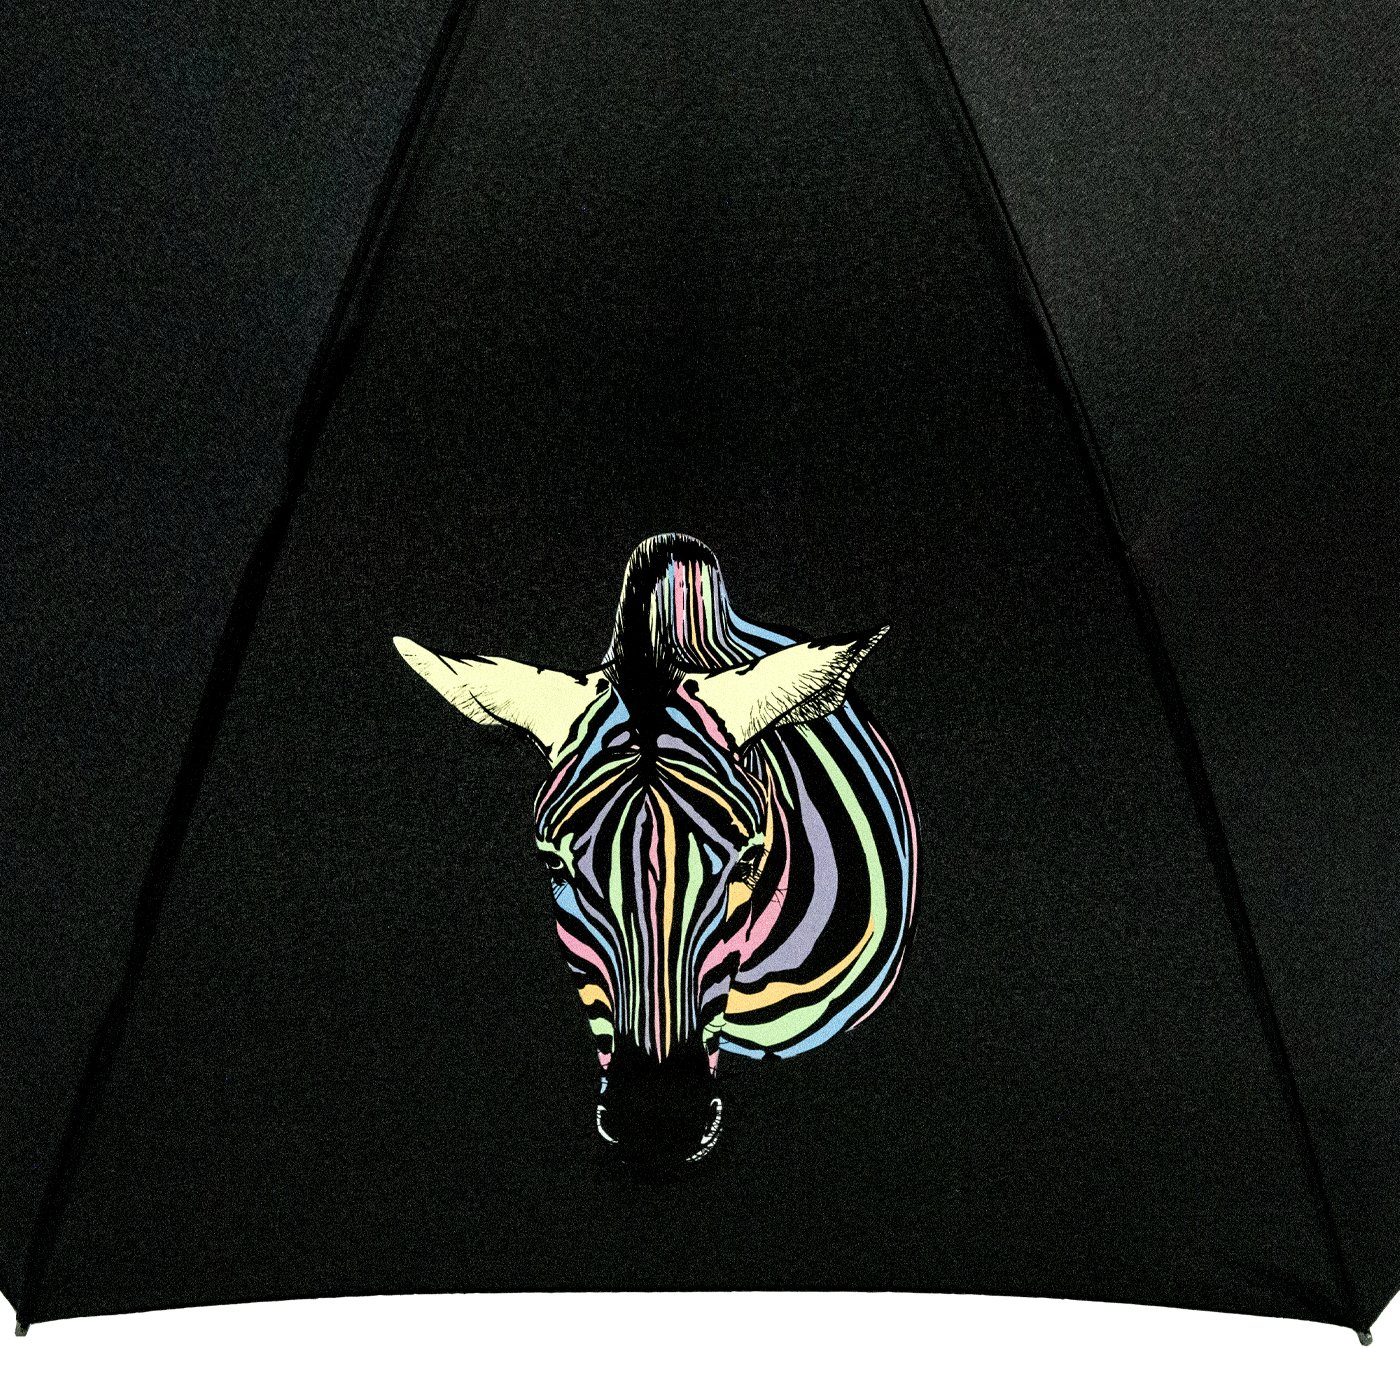 Wow-Effekt, Impliva mit - Langregenschirm Zebra Auf-Automatik Nässe und Damen-Regenschirm bei Farbwechsel Wetprint